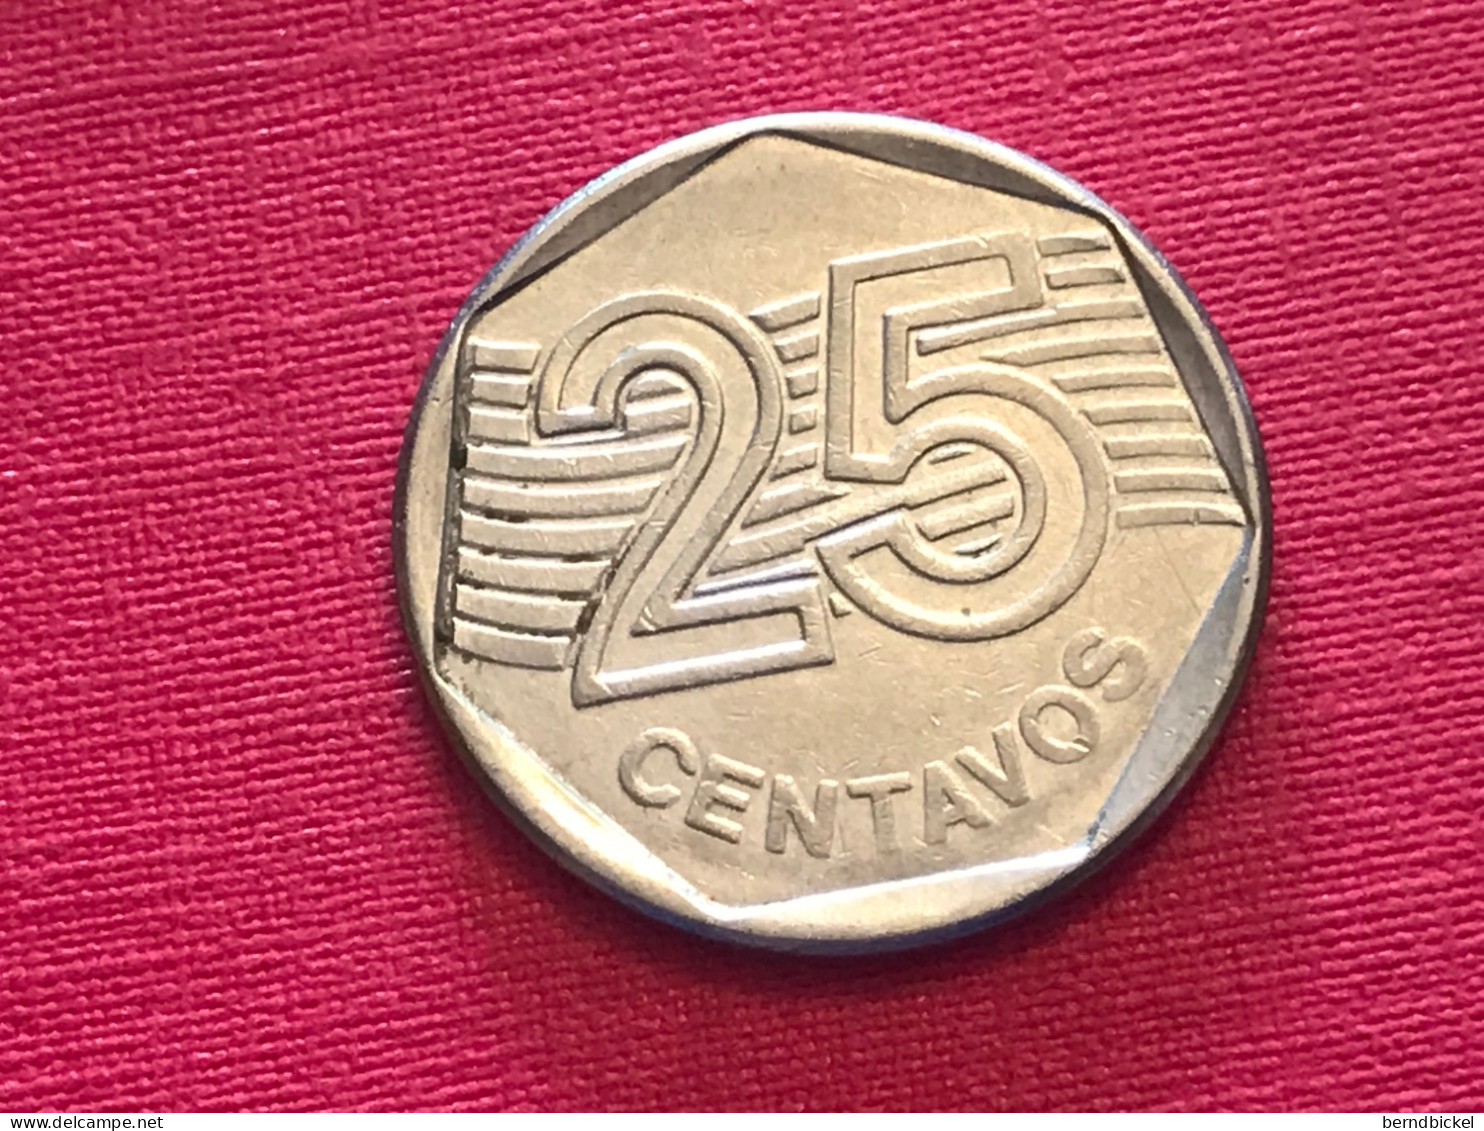 Münze Münzen Umlaufmünze Brasilien 25 Centavos 1995 - Brésil